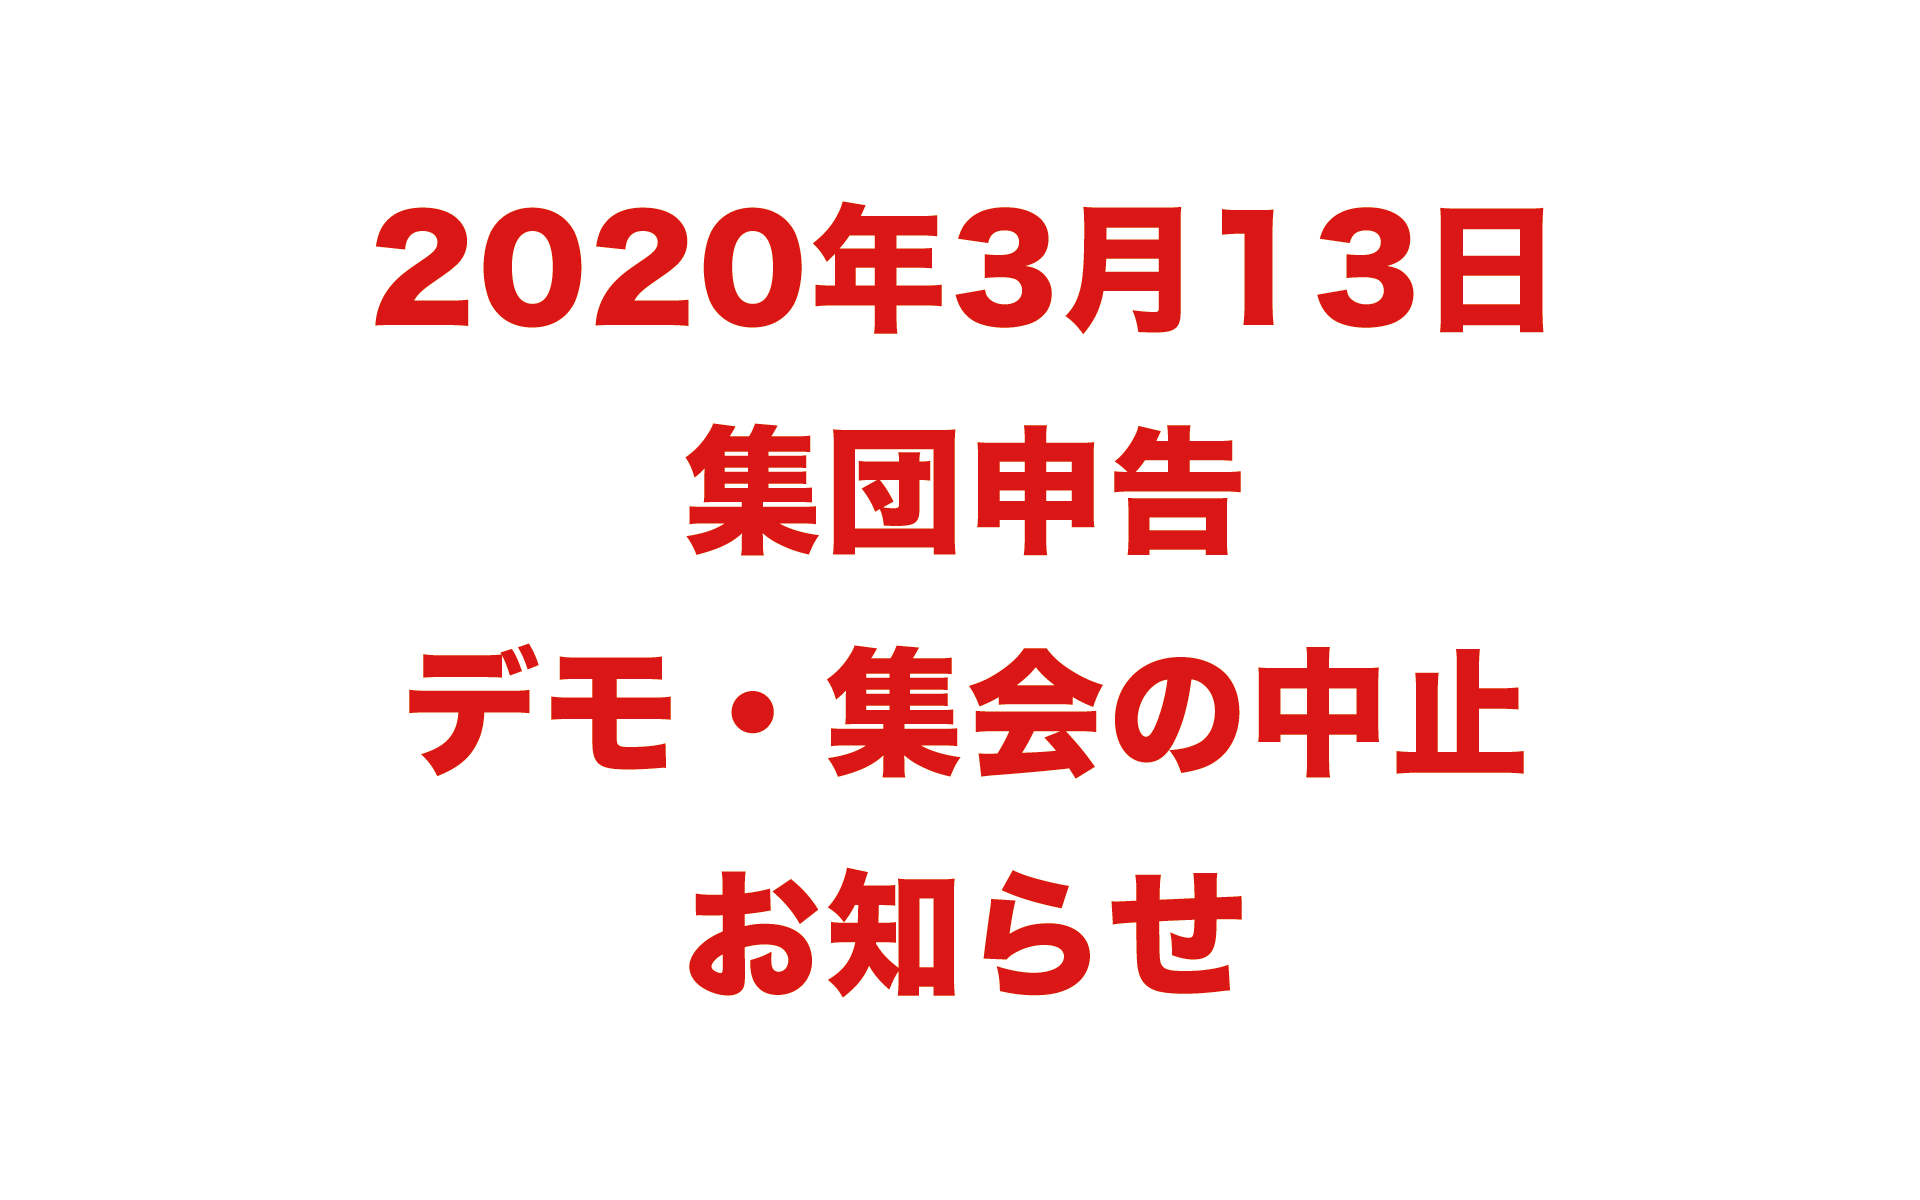 2020年3月13日 集団申告 デモ・集会の中止 お知らせ